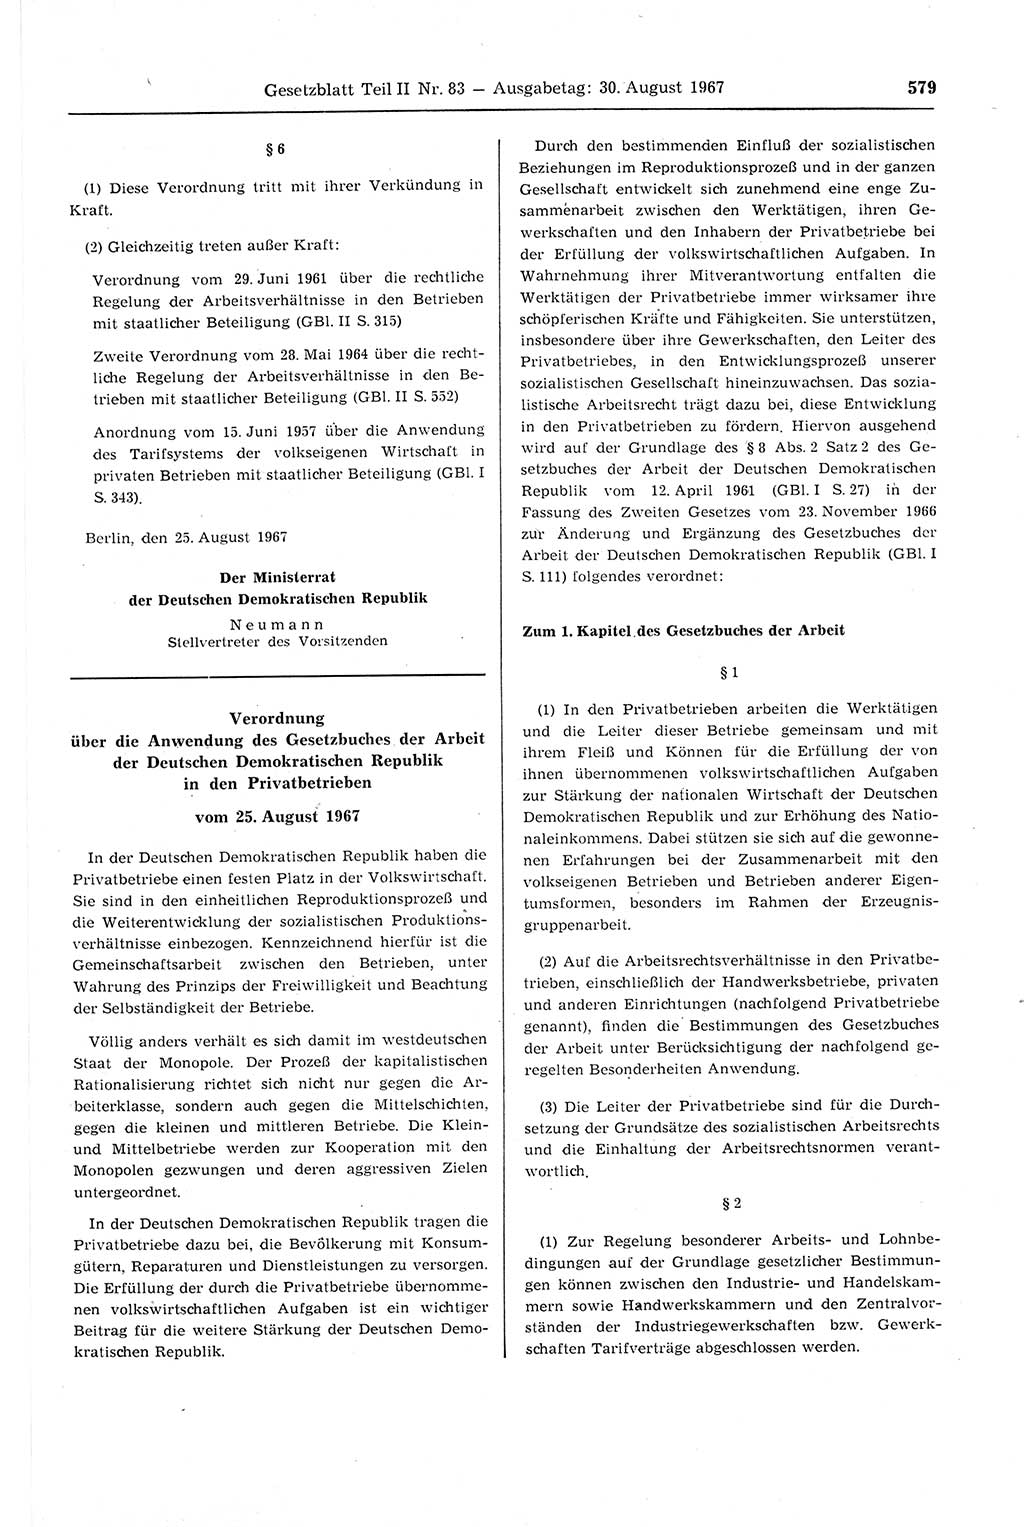 Gesetzblatt (GBl.) der Deutschen Demokratischen Republik (DDR) Teil ⅠⅠ 1967, Seite 579 (GBl. DDR ⅠⅠ 1967, S. 579)